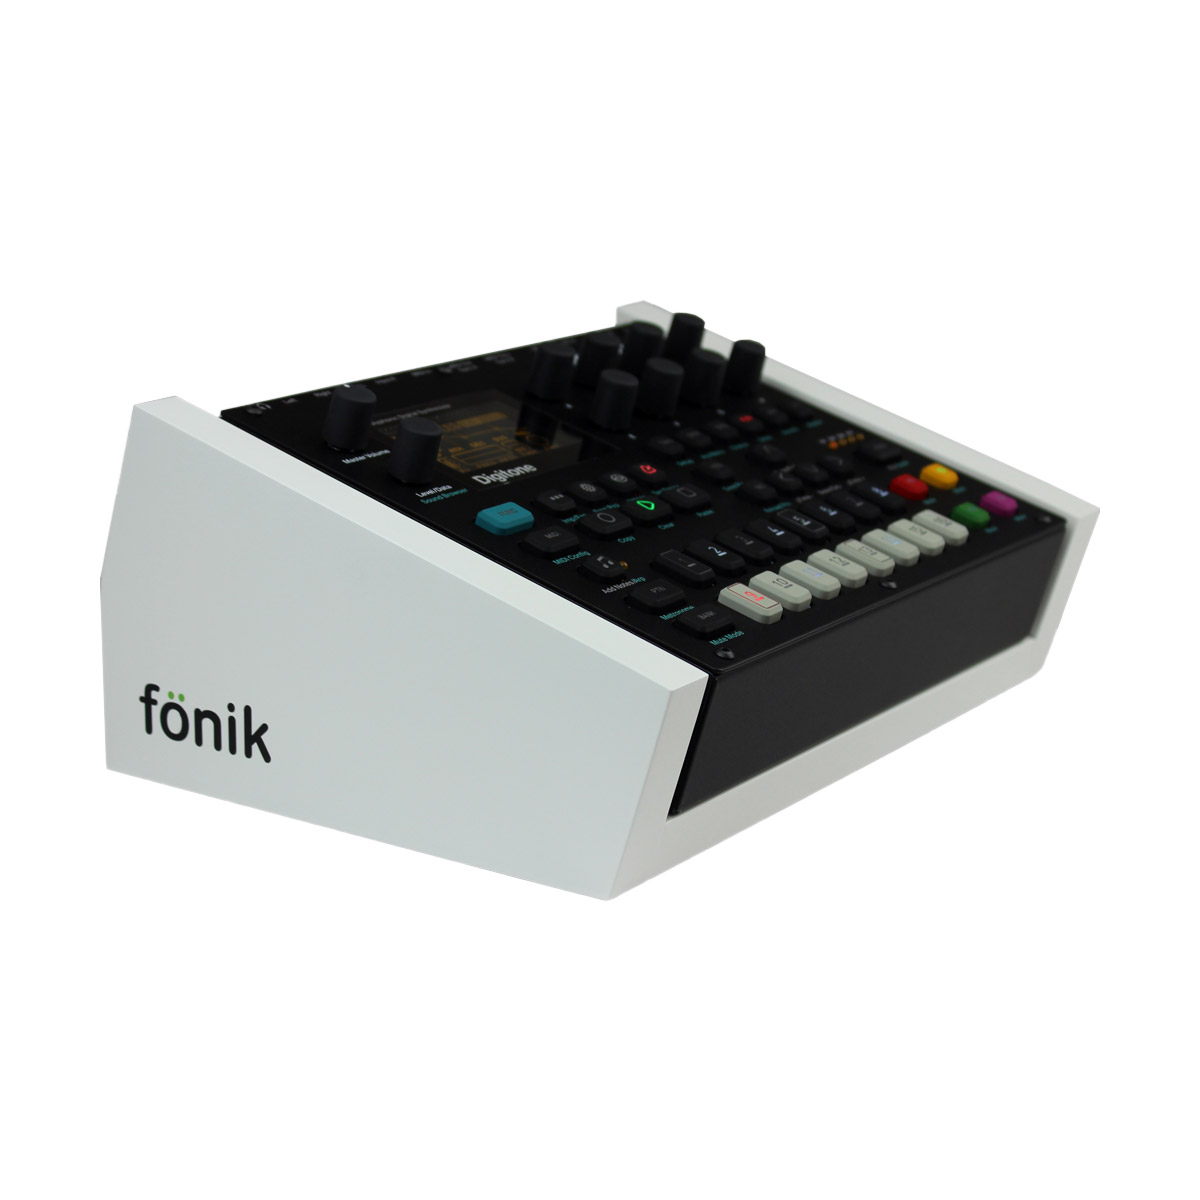 FONIK Audio Stand blanc pour Digitakt/Digitone (vendu séparément)